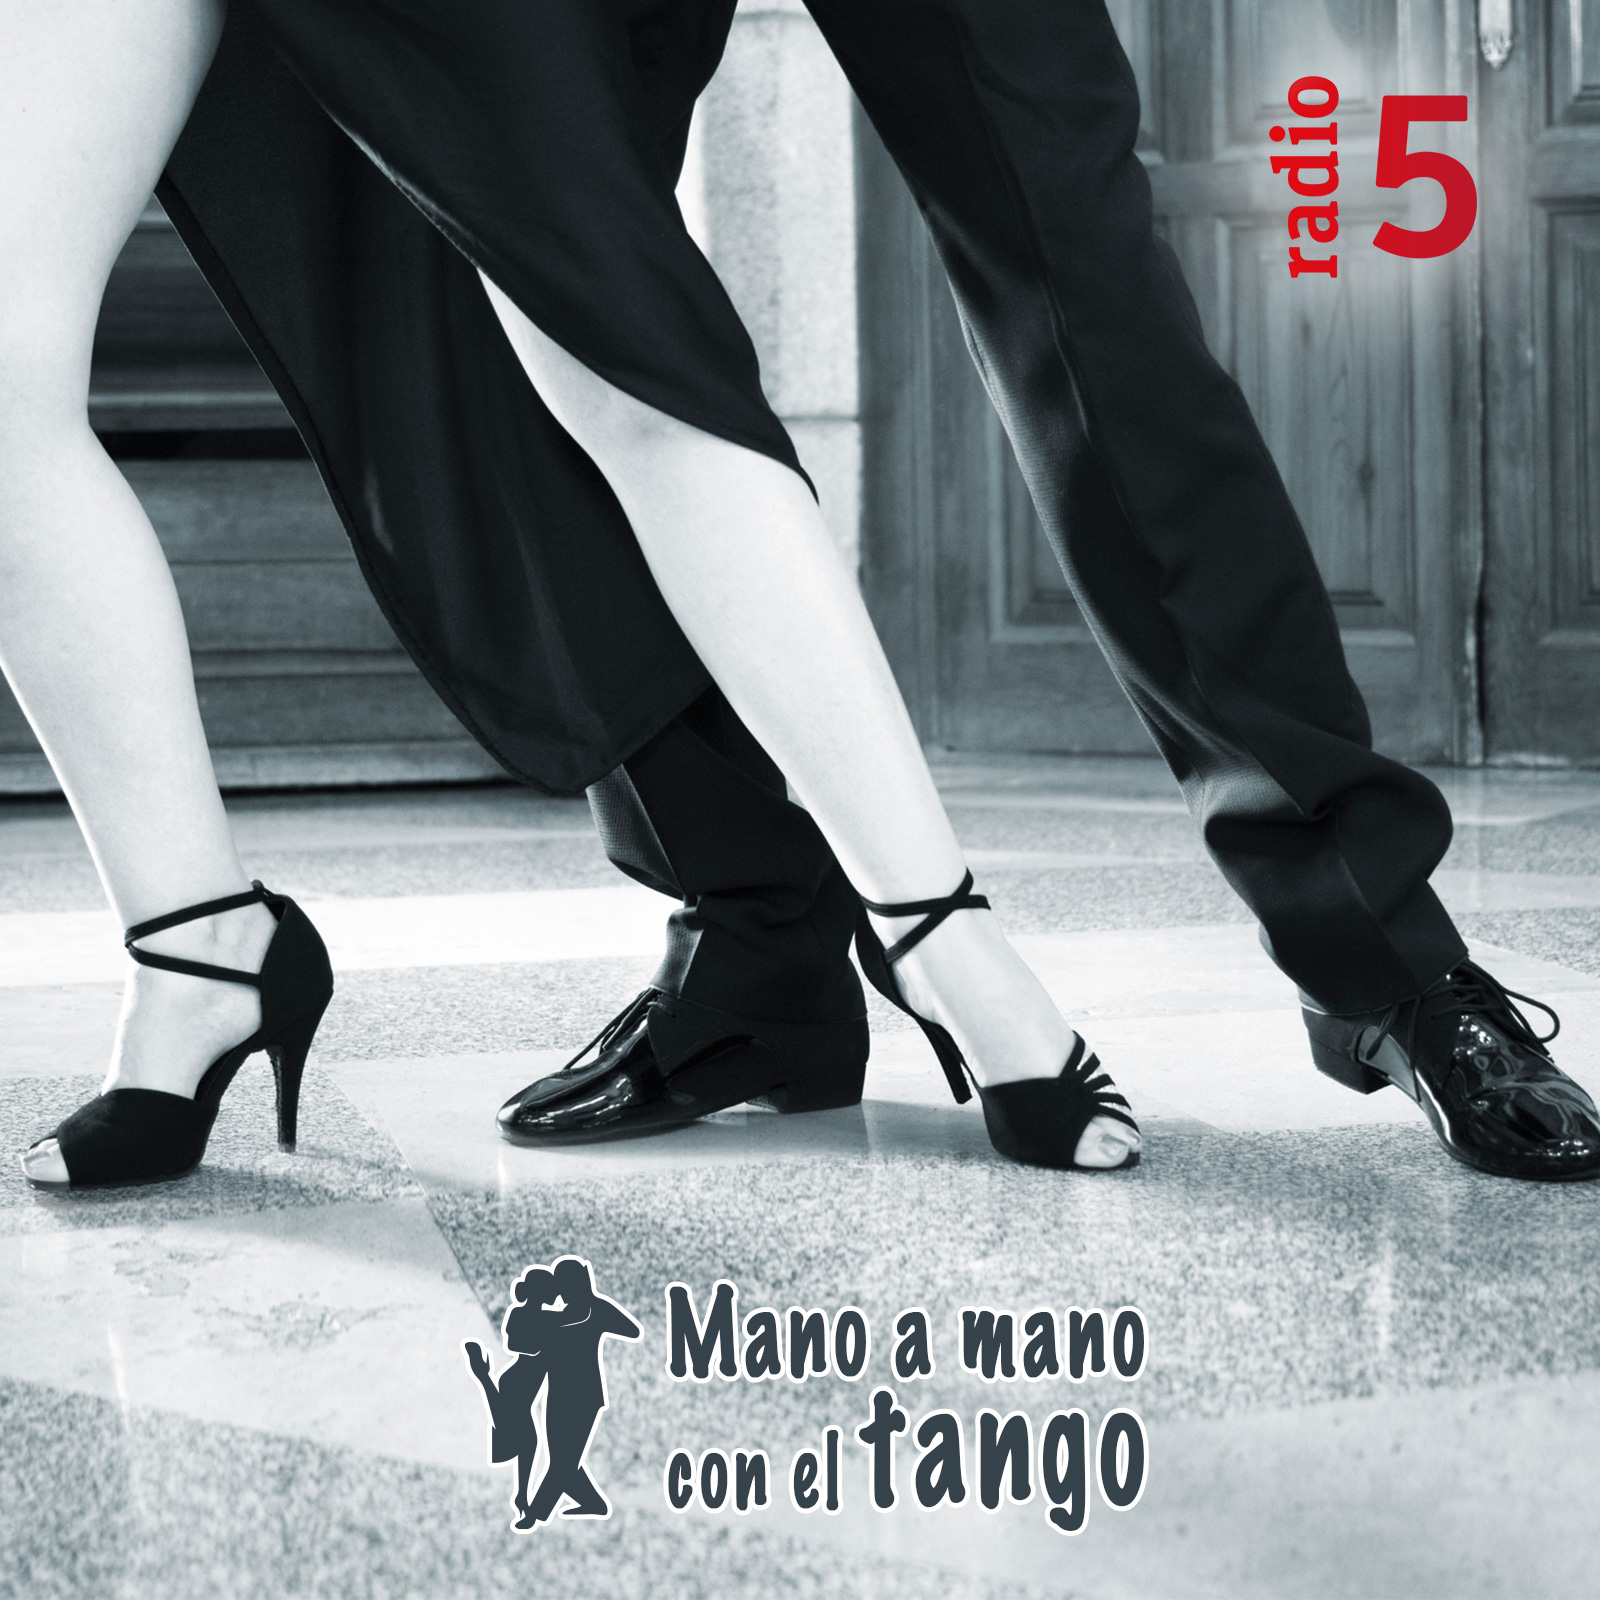 Mano a mano con el tango - "Negra María" - 18/11/12